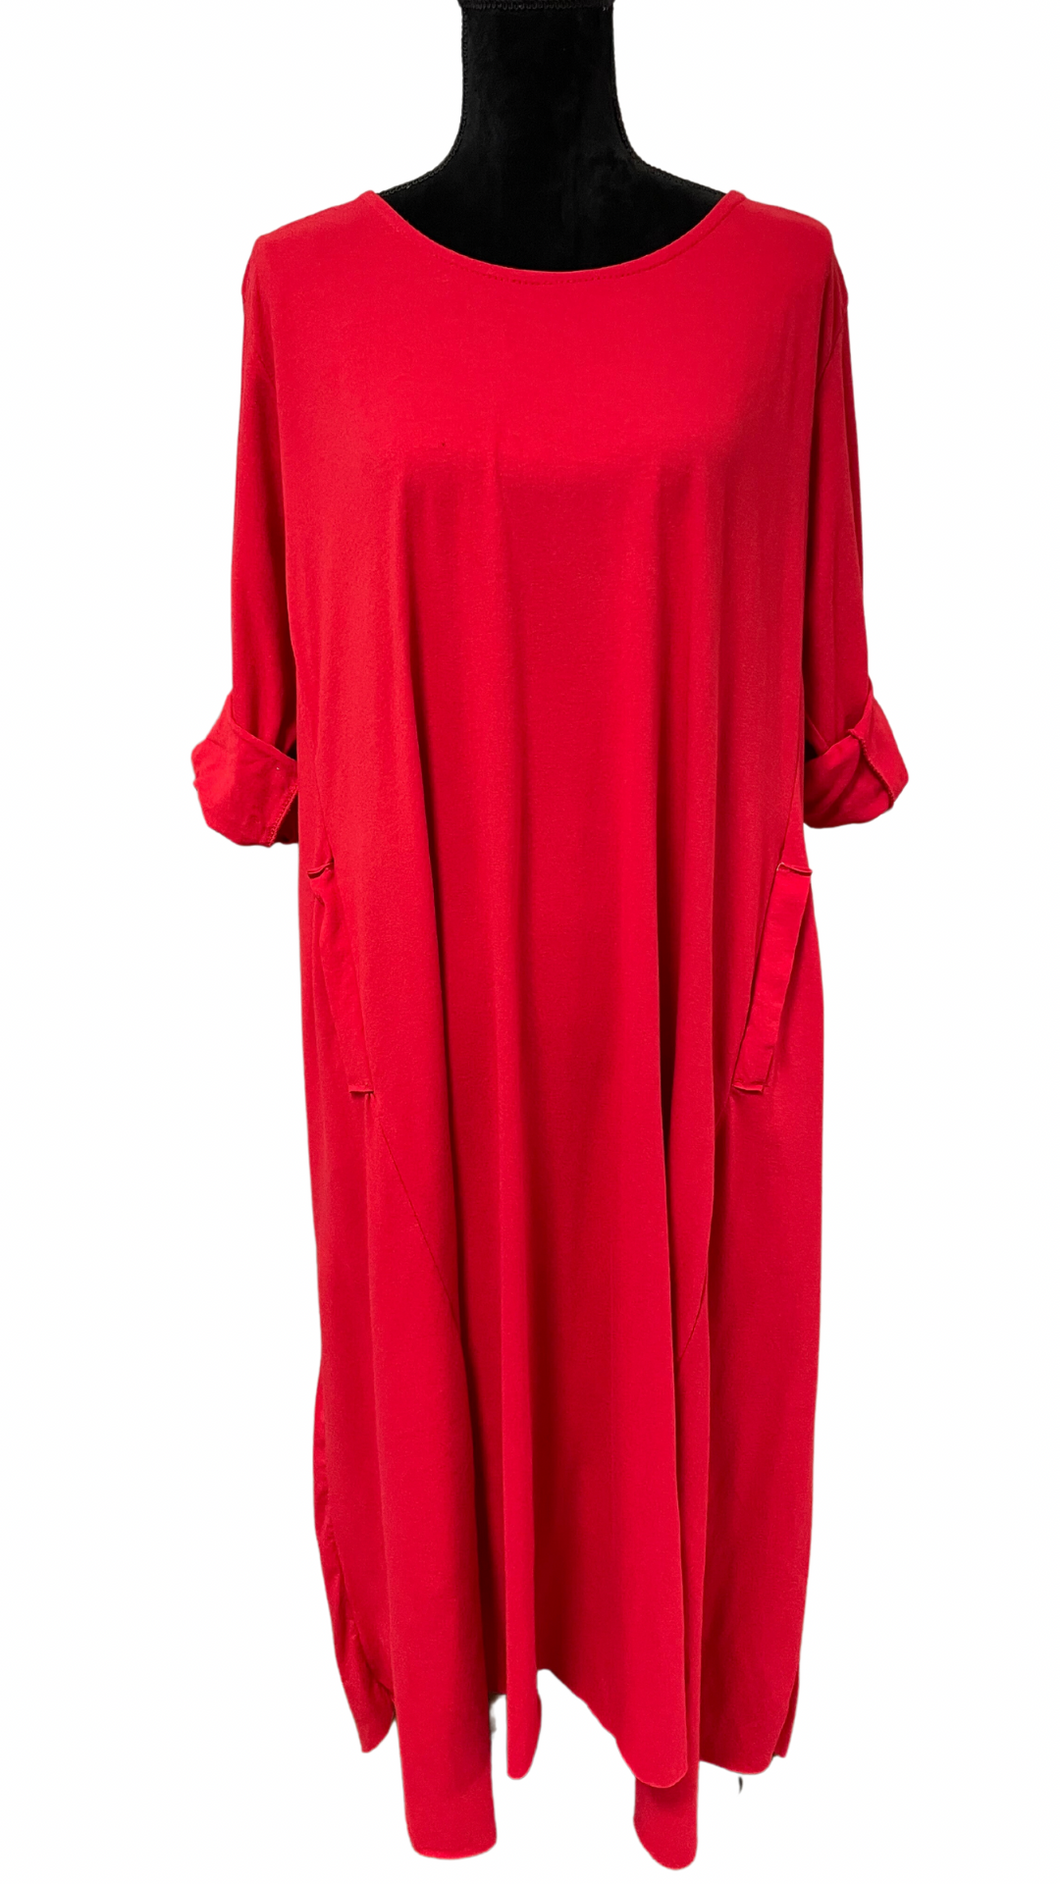 Kratka pamučna haljina ili duža tunika dugih rukava, UNI veličina do 52, SIVA